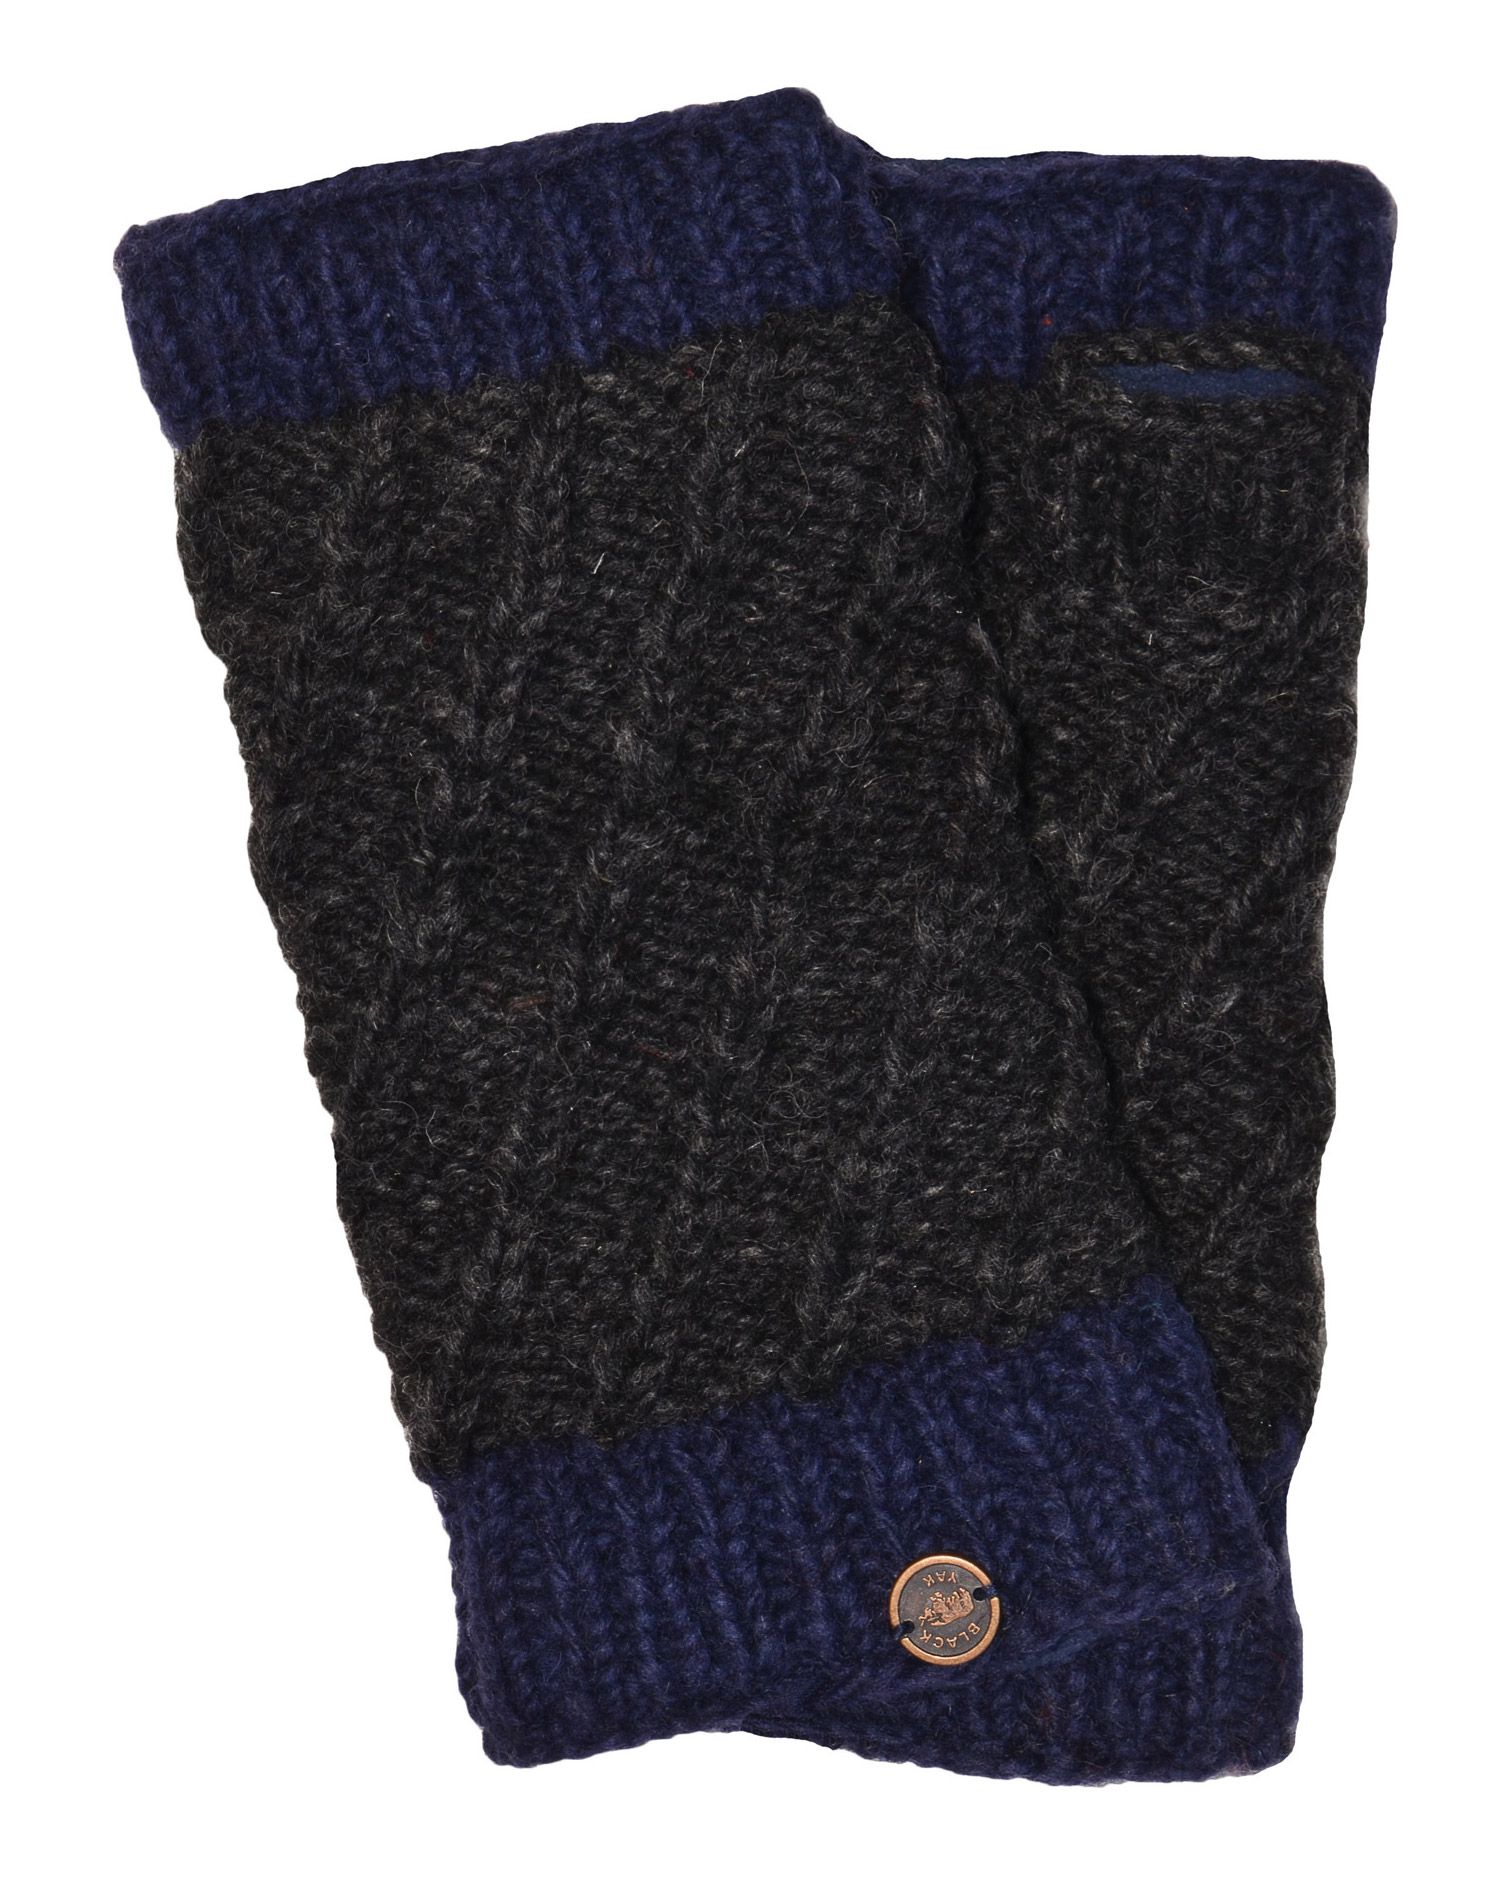 Fleece lined - contrast border - wristwarmer - Charcoal/blue | Black Yak